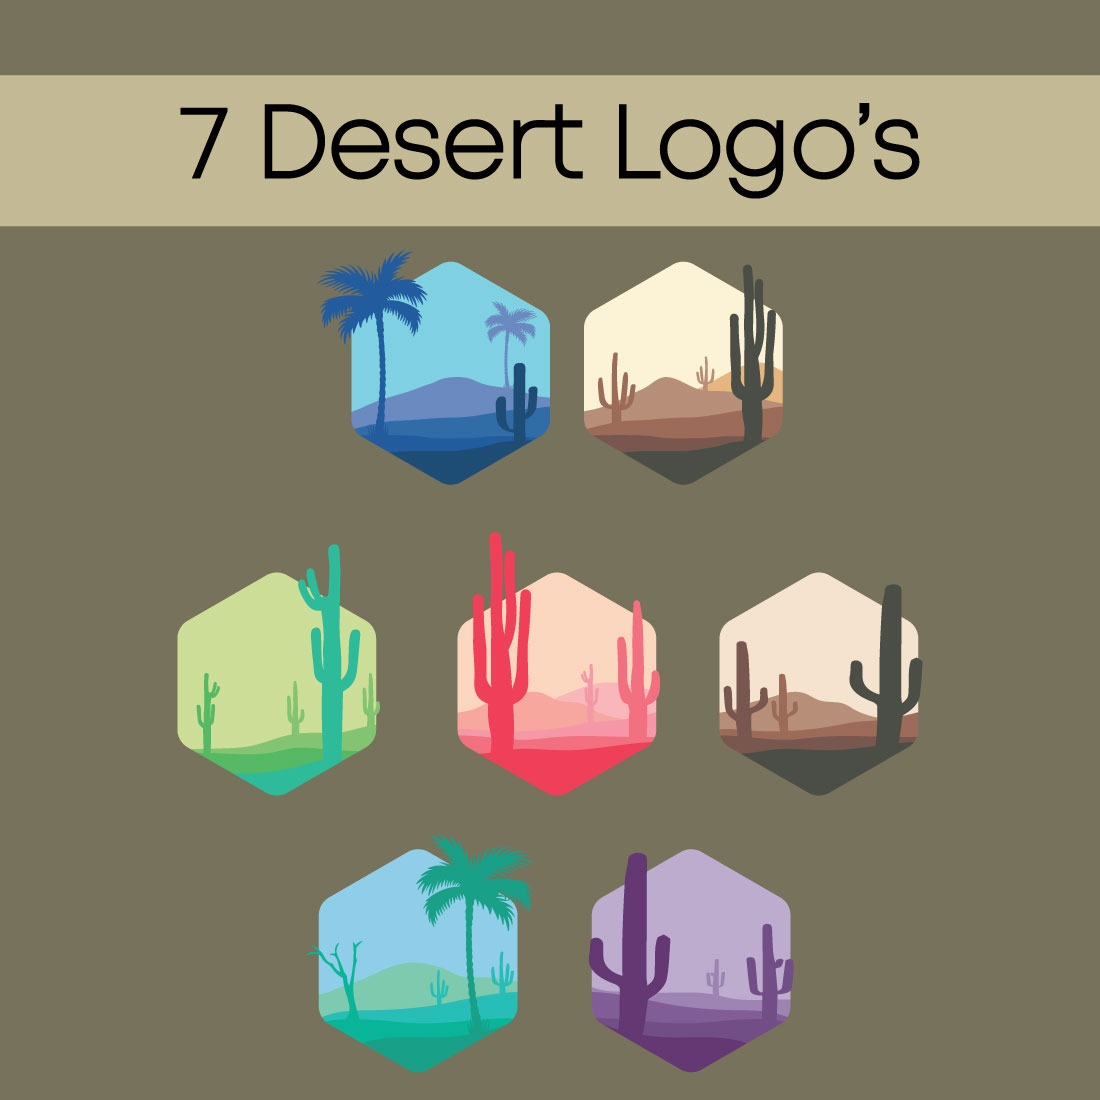 7 Desert Logo's preview image.